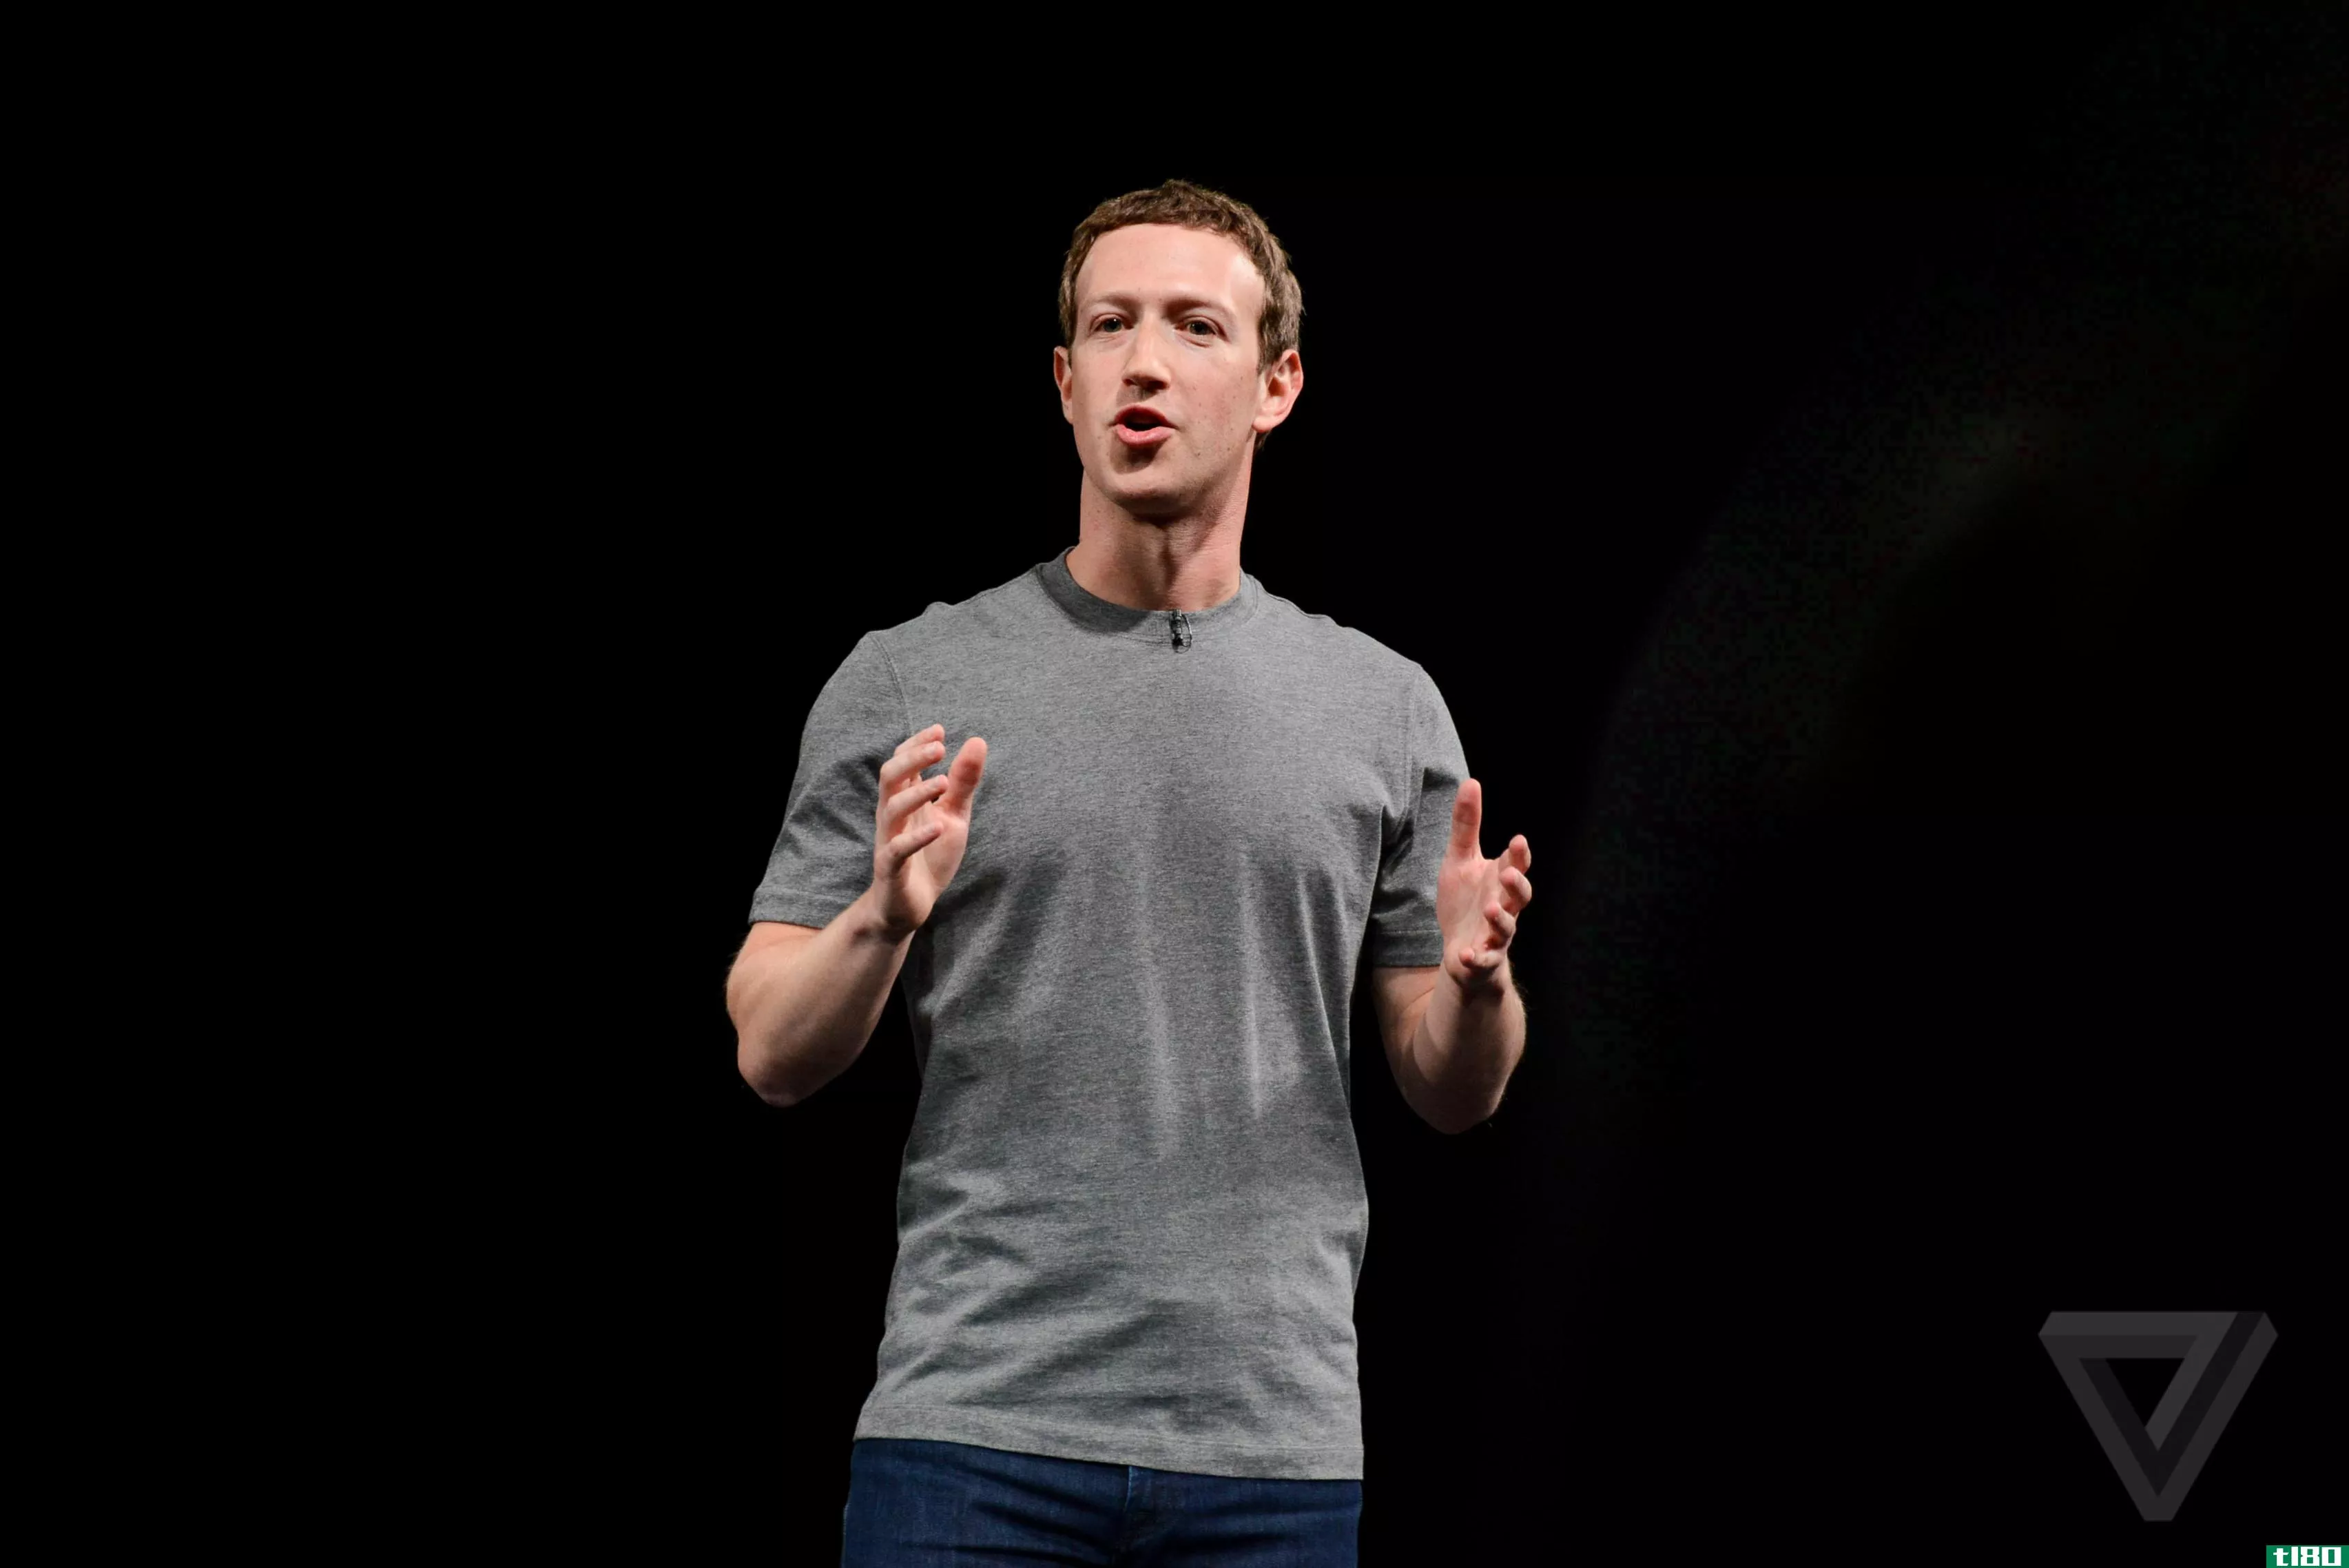 facebook将在英国多缴纳数百万英镑的税款